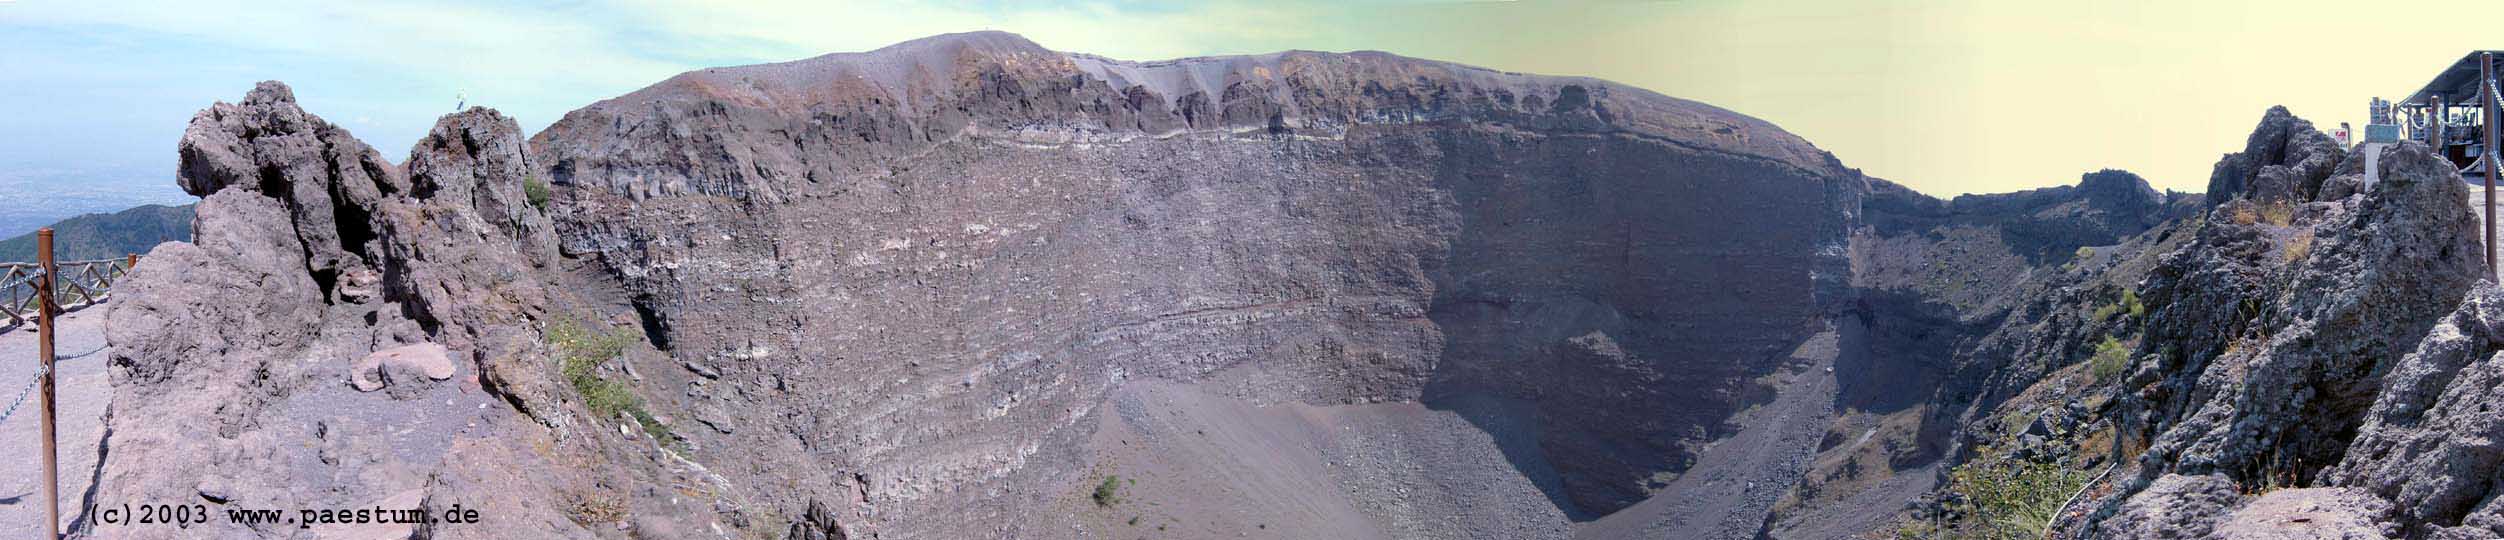 Panorama crater of Vesuvius